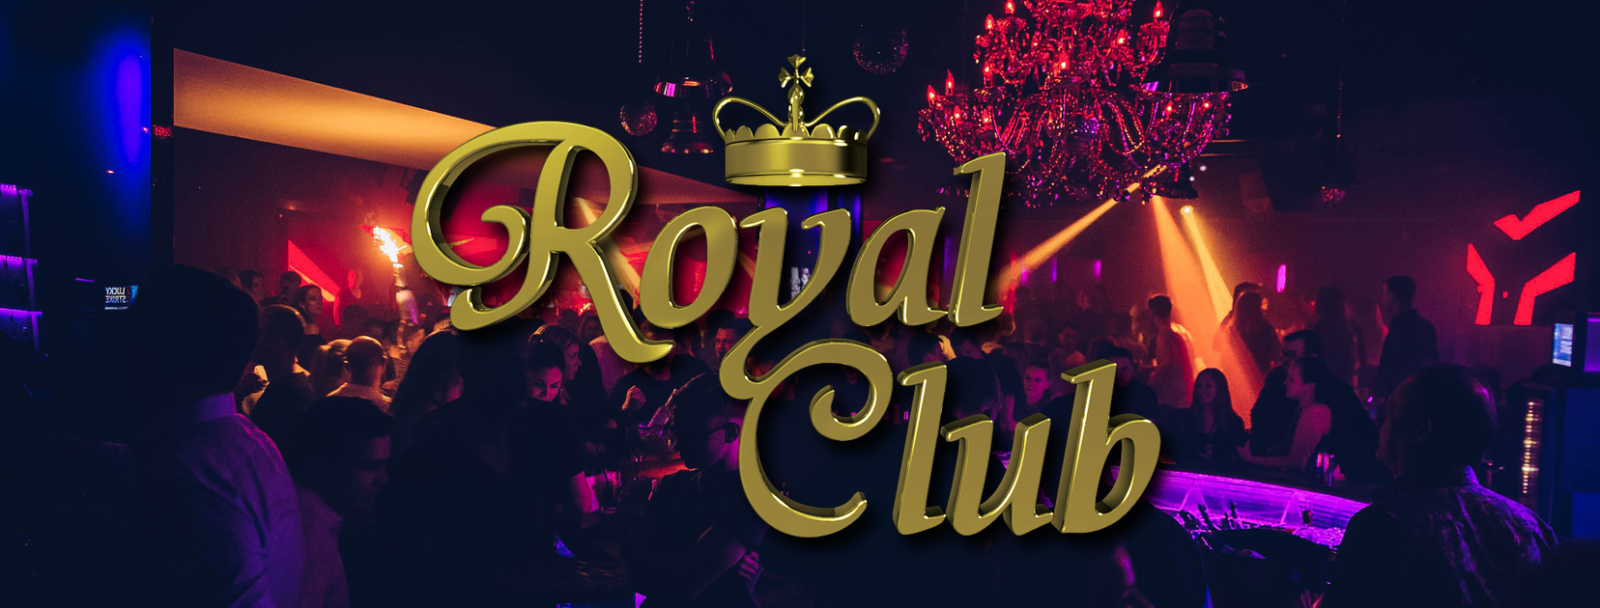 Royal Club - 7th Anniversary